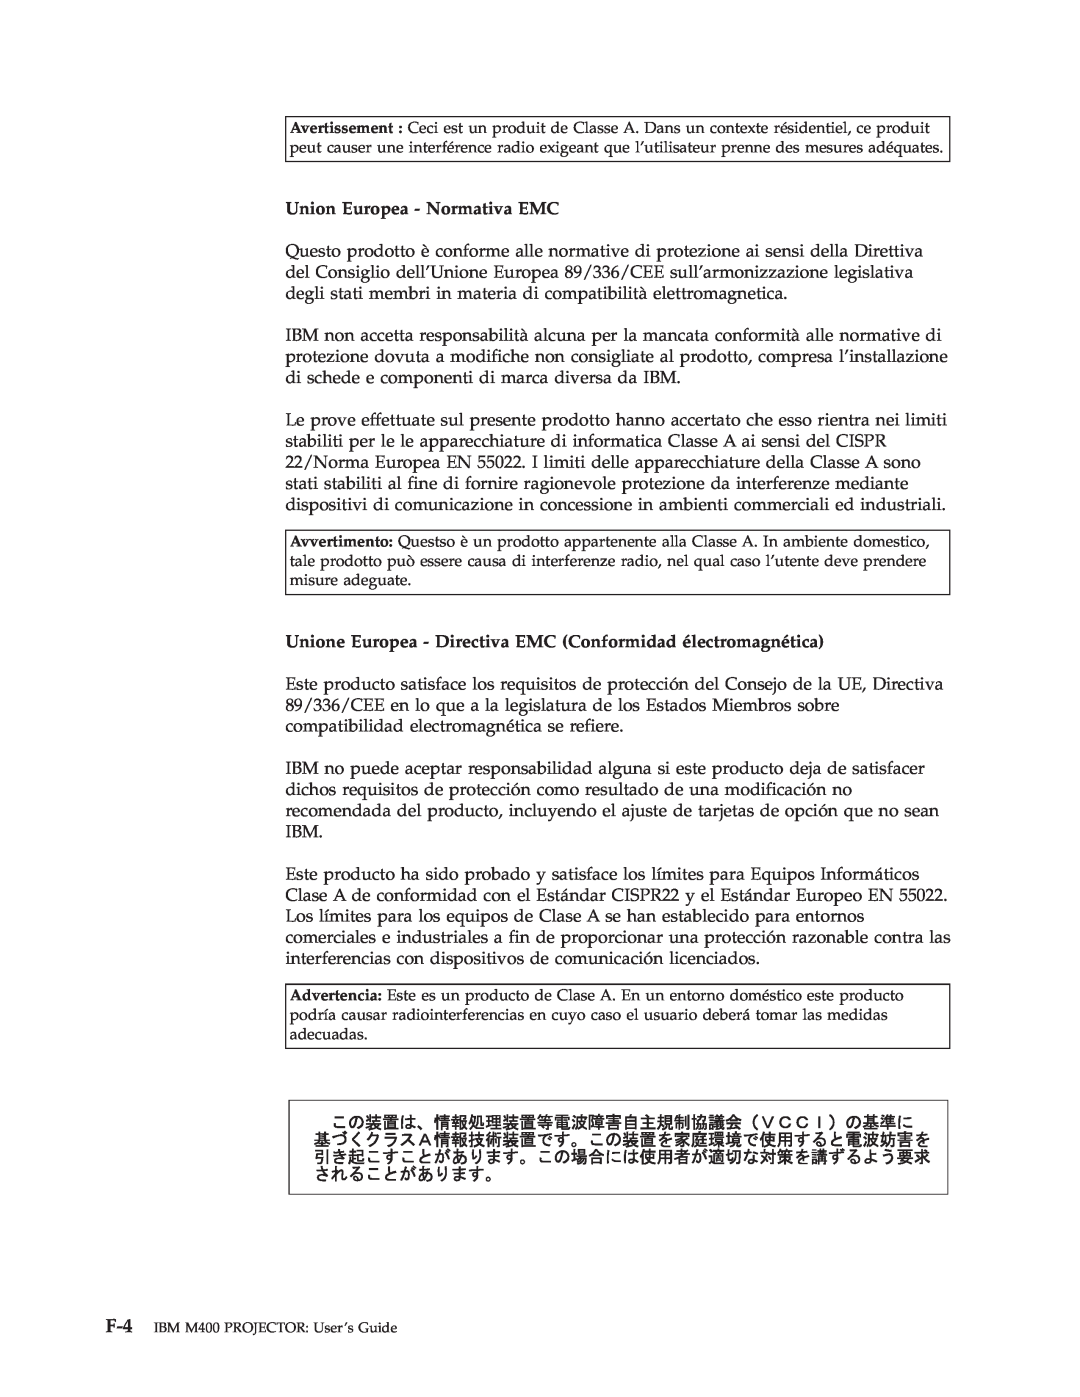 IBM M400 manual Union Europea - Normativa EMC, Unione Europea - Directiva EMC Conformidad électromagnética 